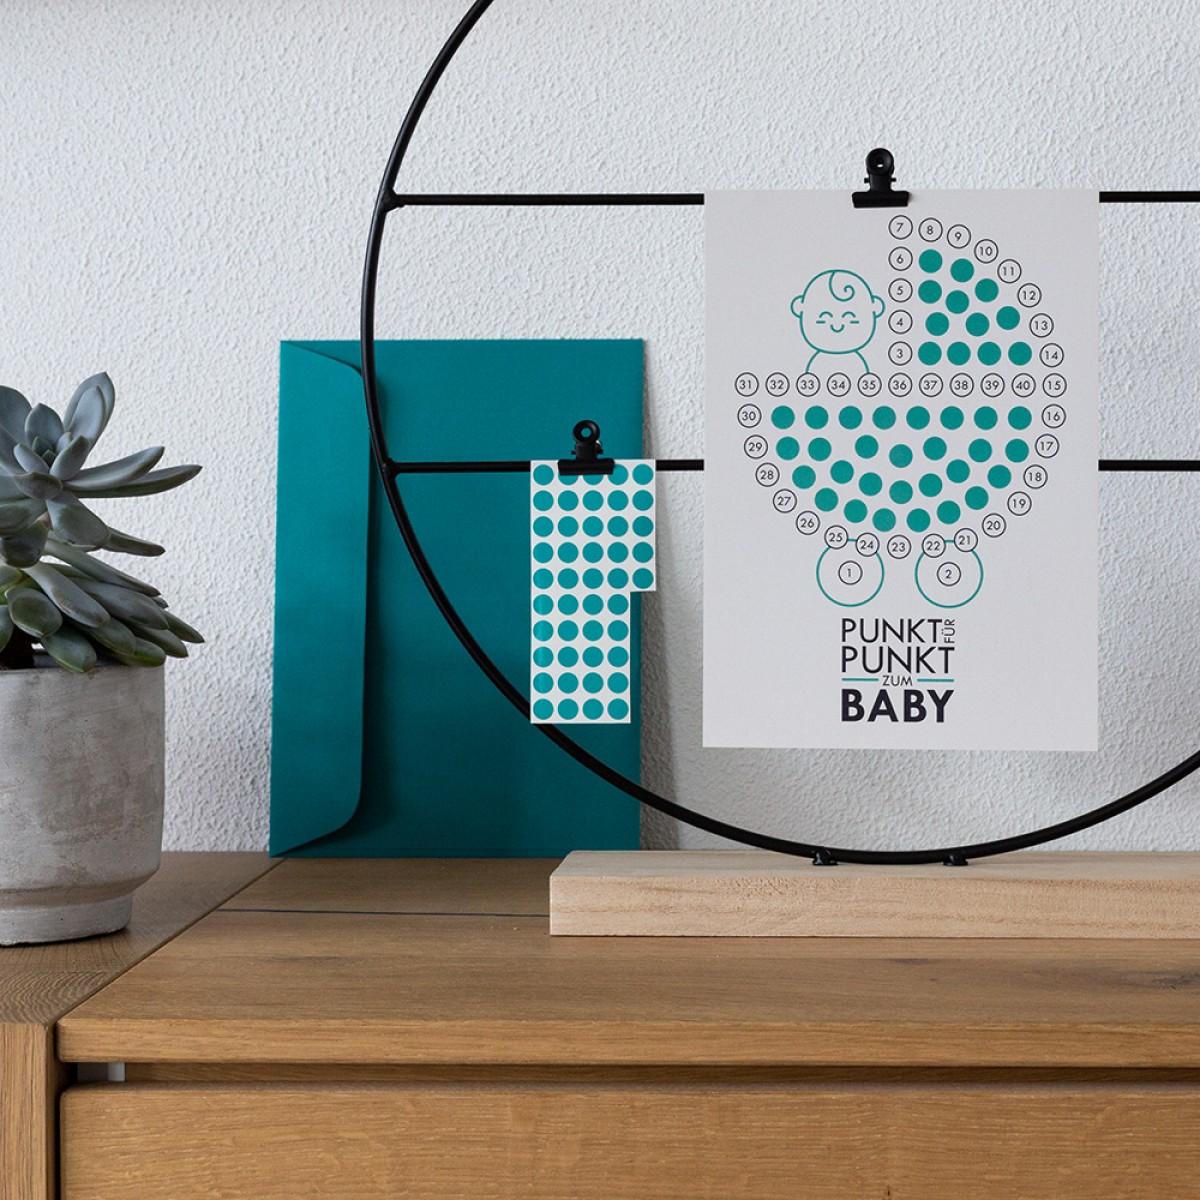 TYPOP 5-teiliges Set Babykalender "Hallo kleines Baby" inkl. Umschlag, Minikarte + Umschlag und Klebepunkte